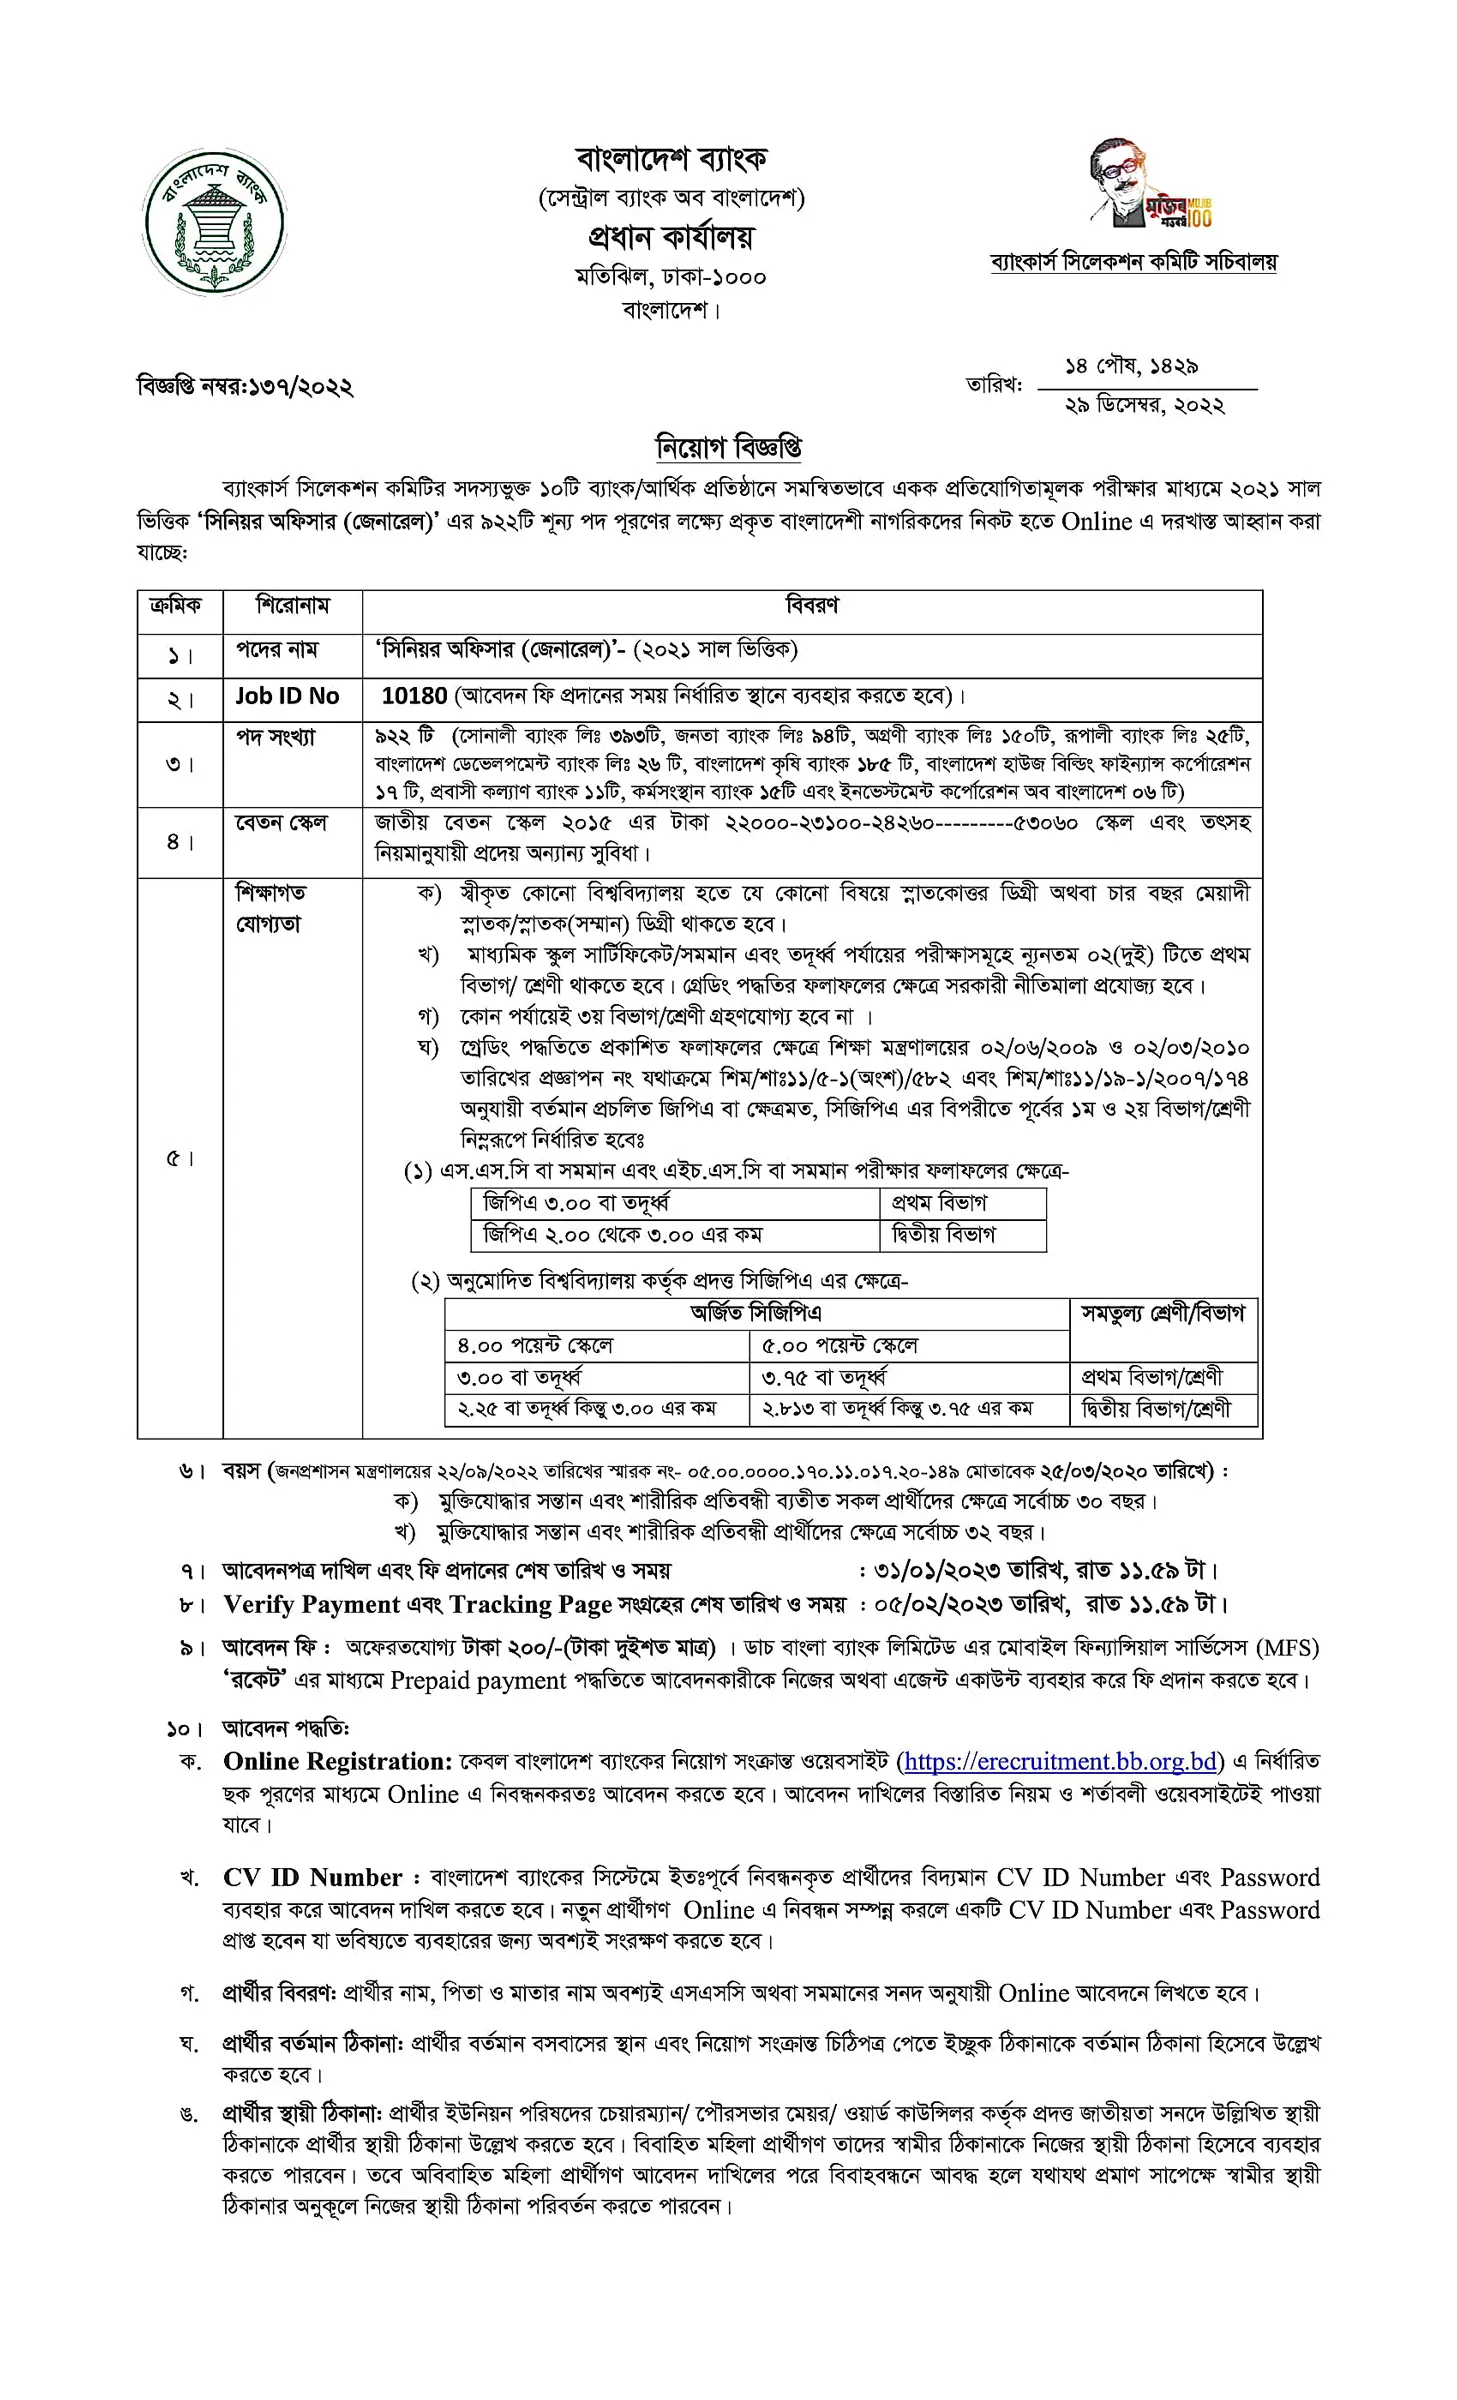 বাংলাদেশ ব্যাংকের চাকরির বিজ্ঞপ্তি ২০২৩ - erecruitment.bb.org.bd